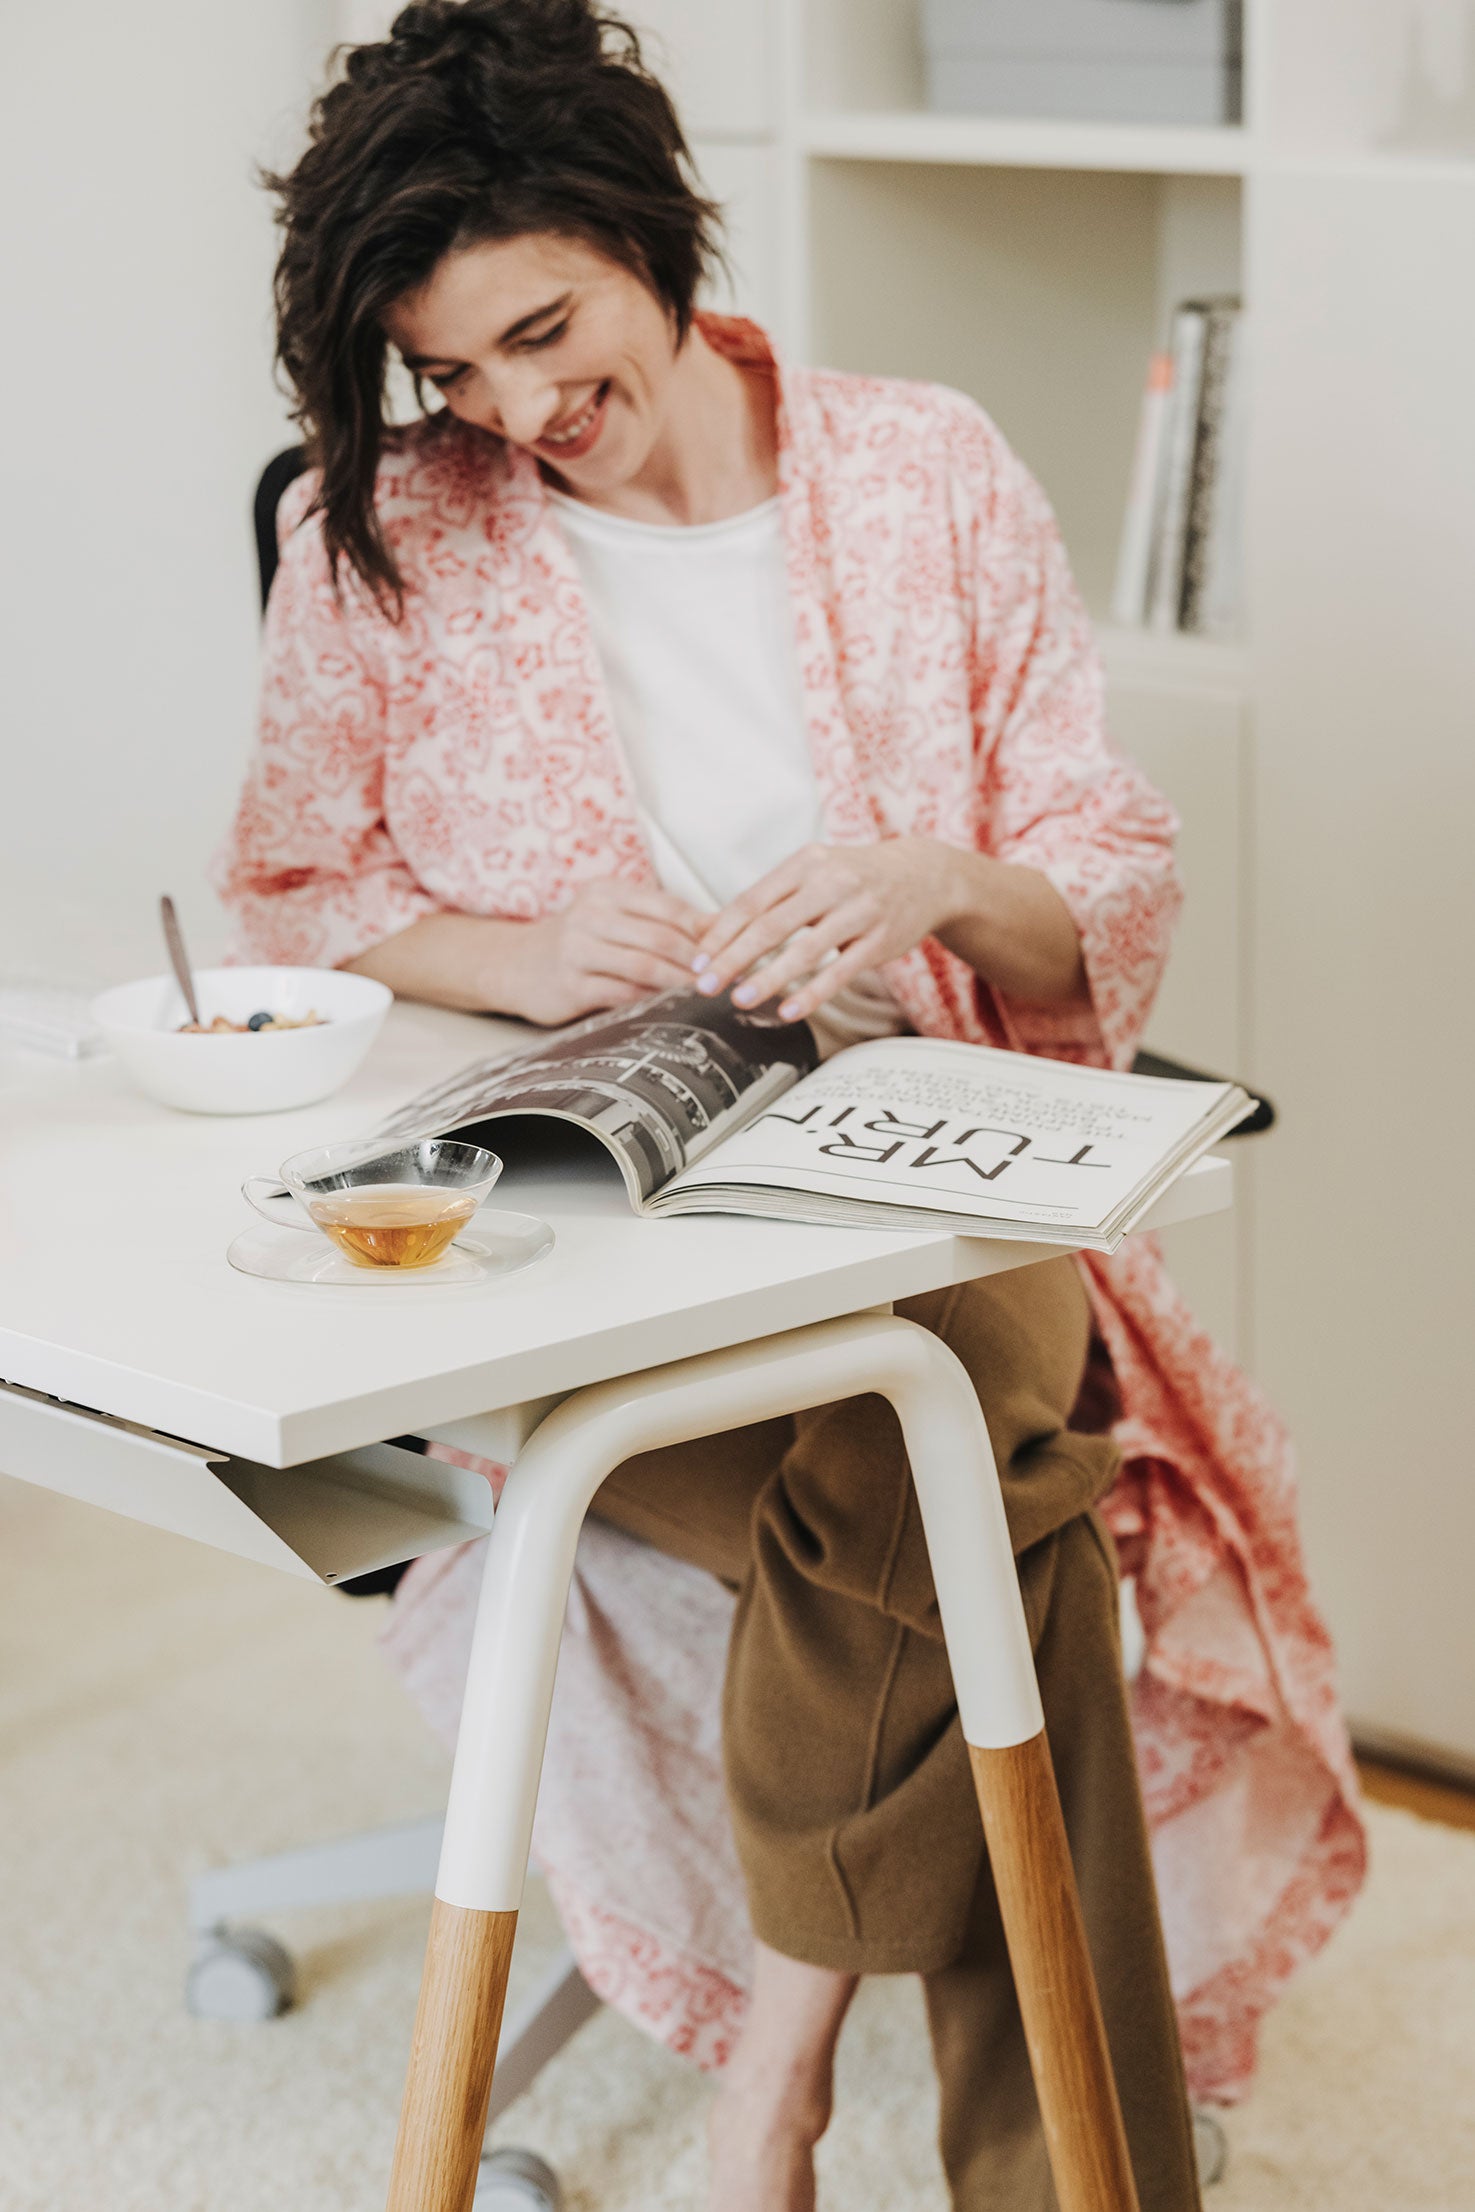 Man sieht einen Arbeitsplatz mit einem weißen Arbeitstisch, der Tischbeine aus Holz hat. Eine Frau sitzt davor und lächelt, während sie ein Magazin durchblättert.